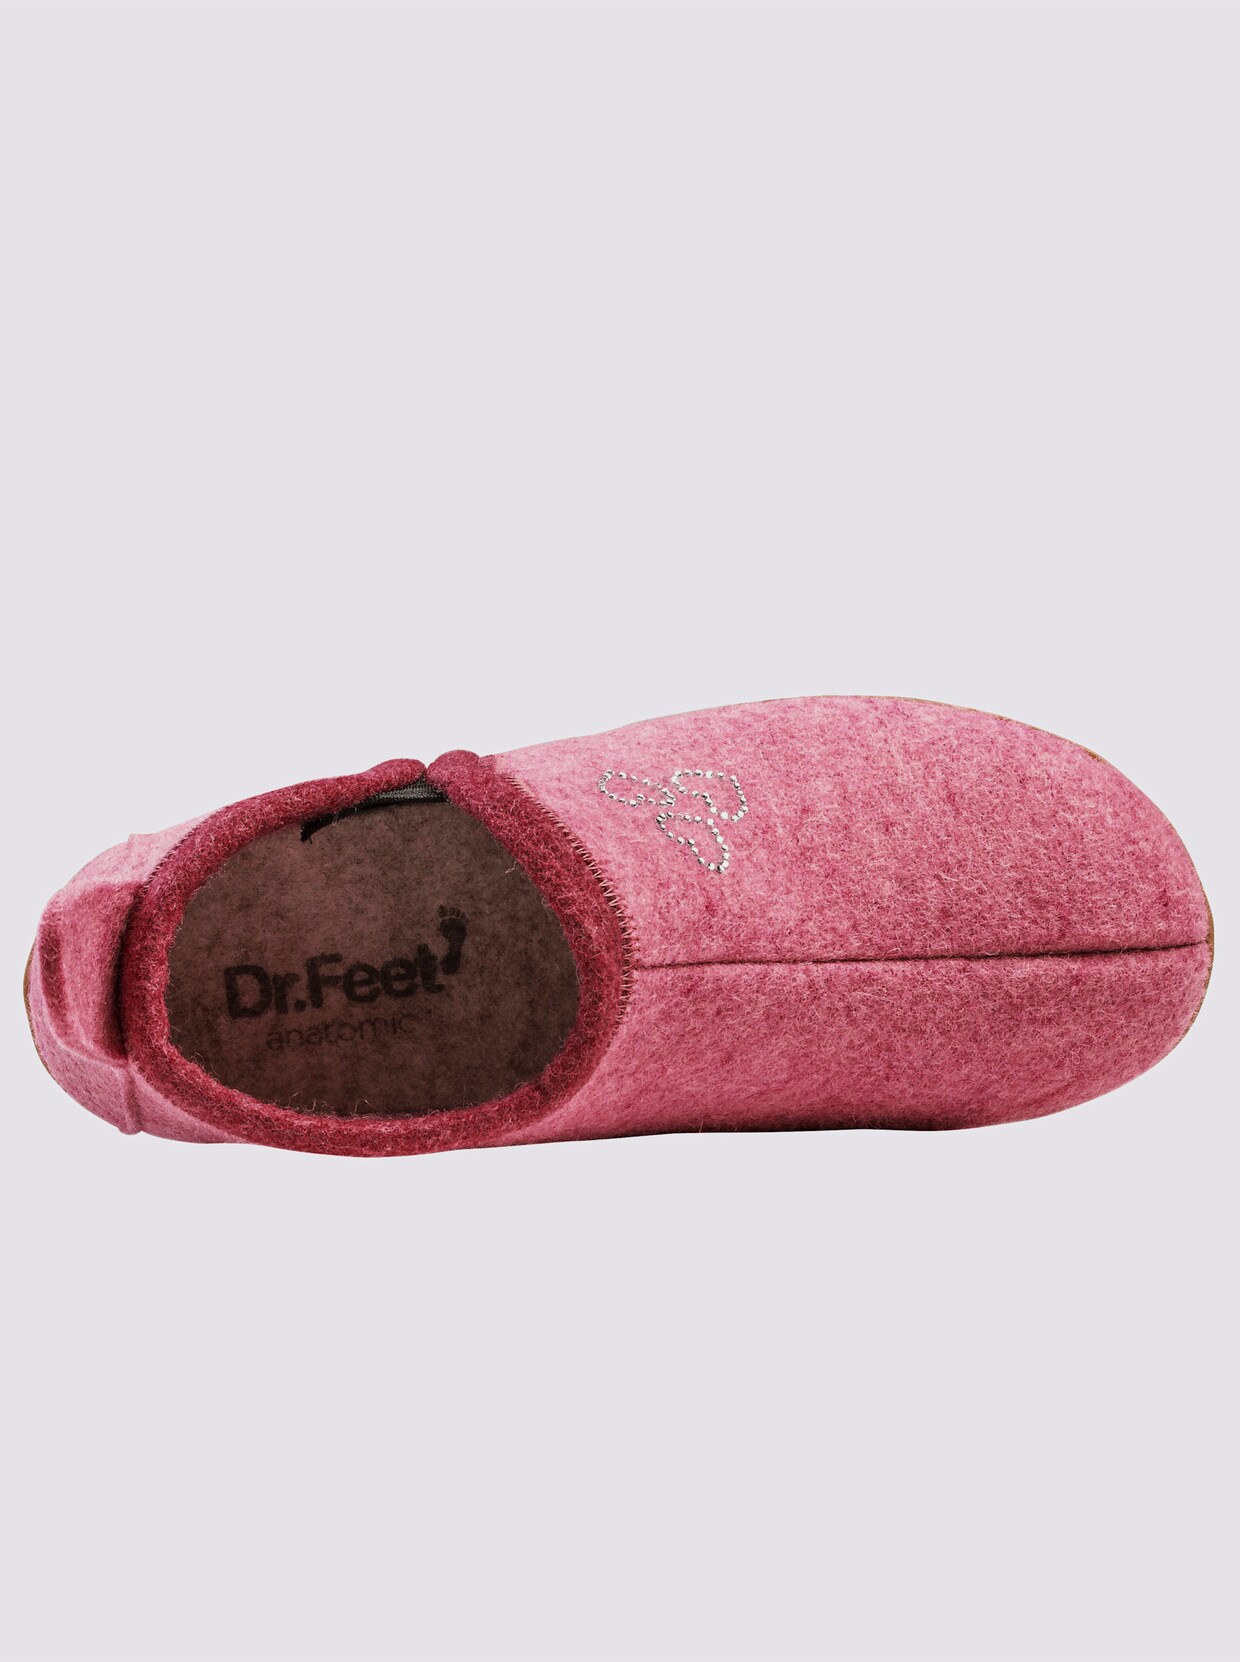 Dr. Feet Hausschuhe - rosa